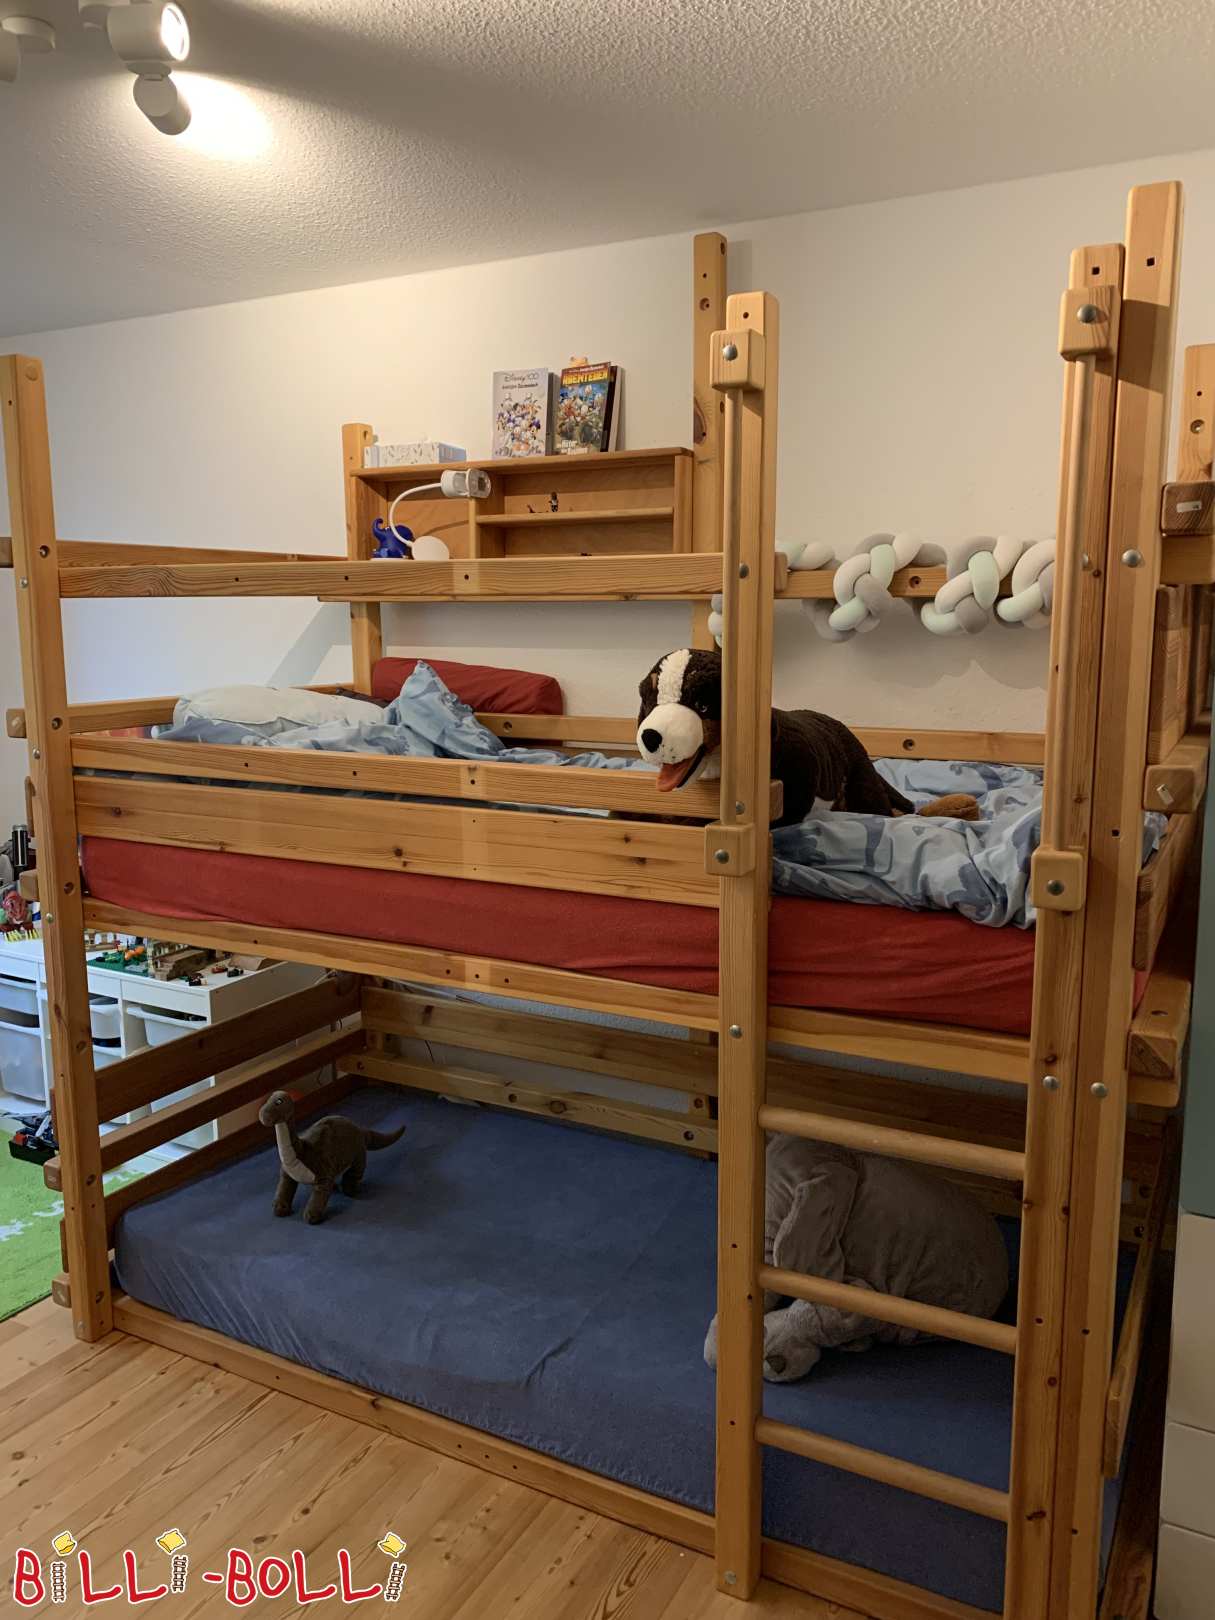 Tetőtéri ágy, amely a gyermekkel együtt nő, két alvási szinttel (Kategória: Tetőtéri ágy nő a gyermekkel használt)